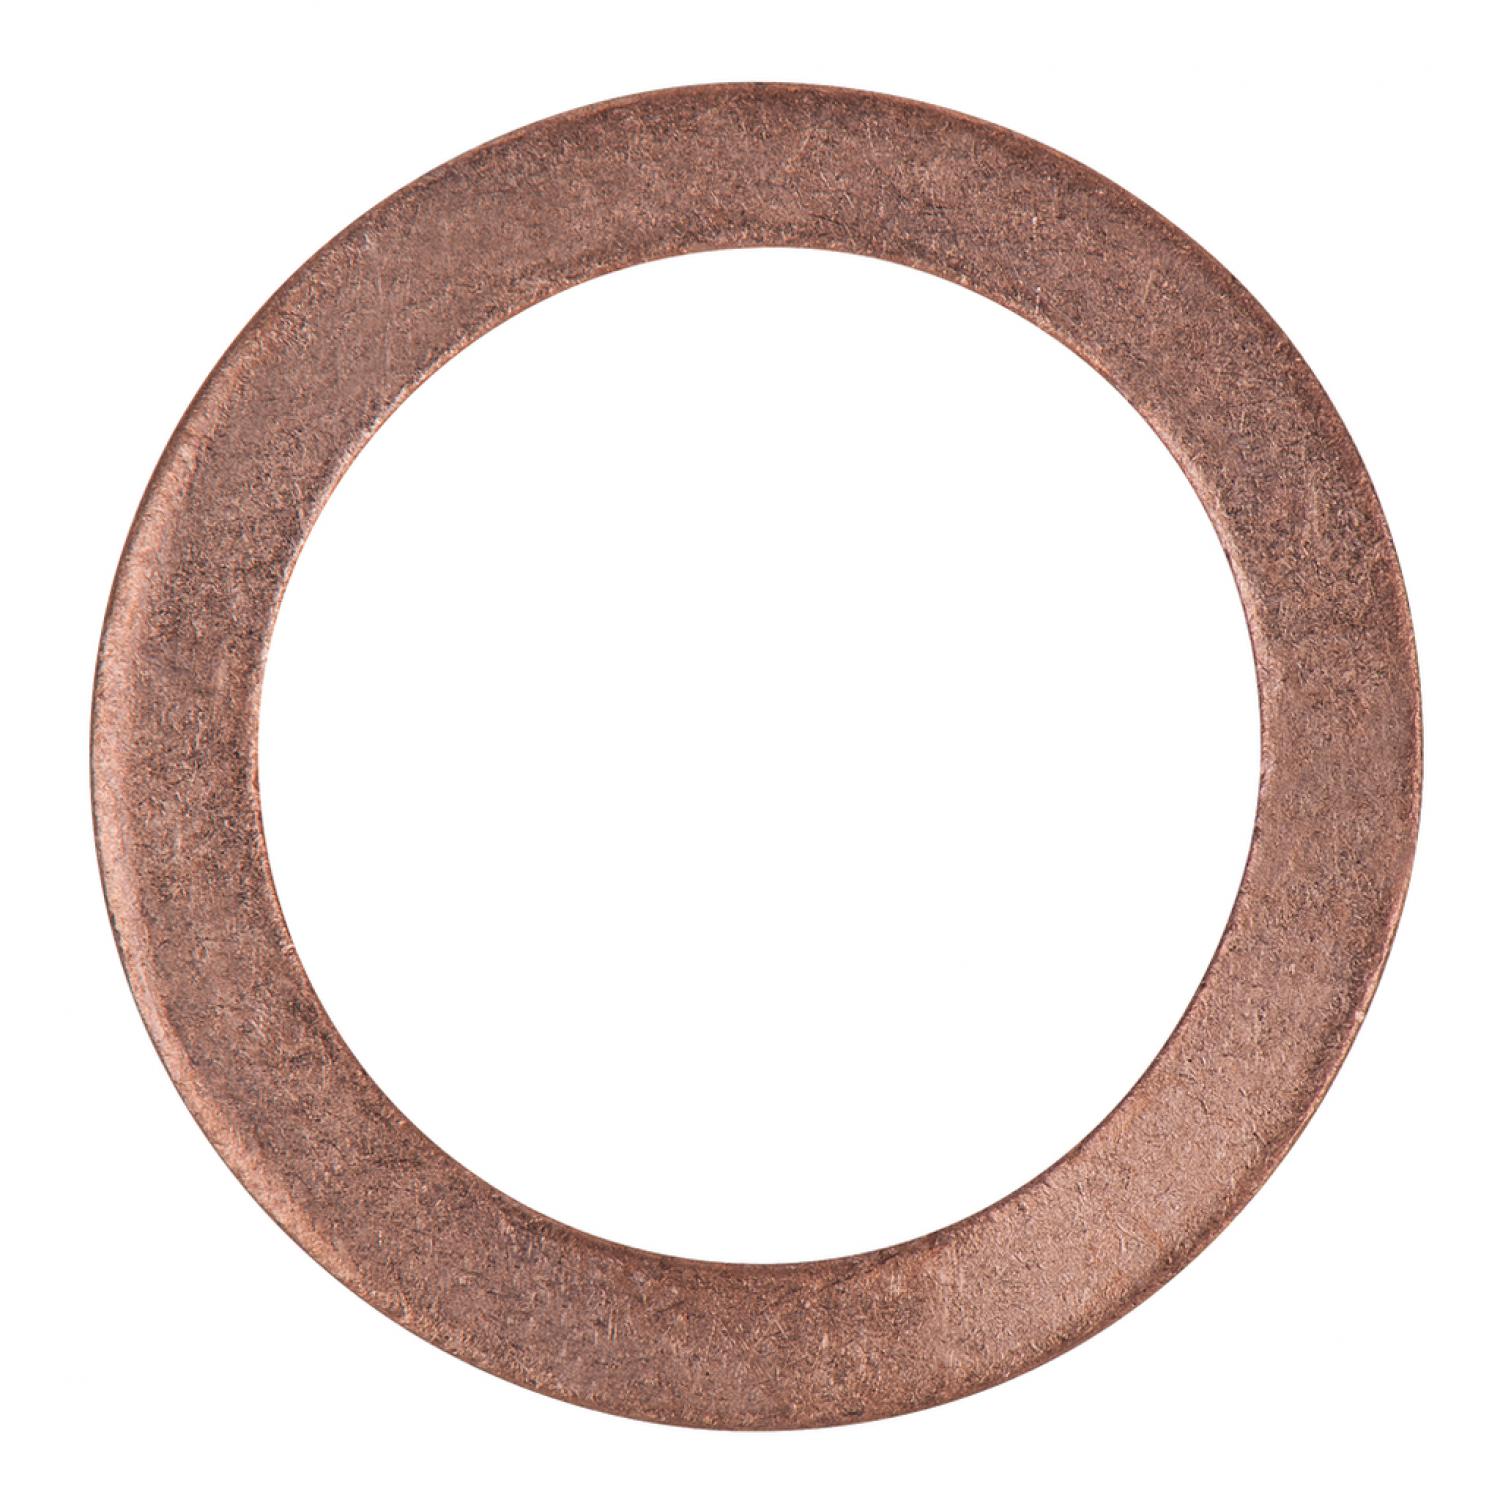 Уплотнительное кольцо, медное, внешний Ø 26 мм, внутренний Ø 19 мм, 25 шт в упаковке